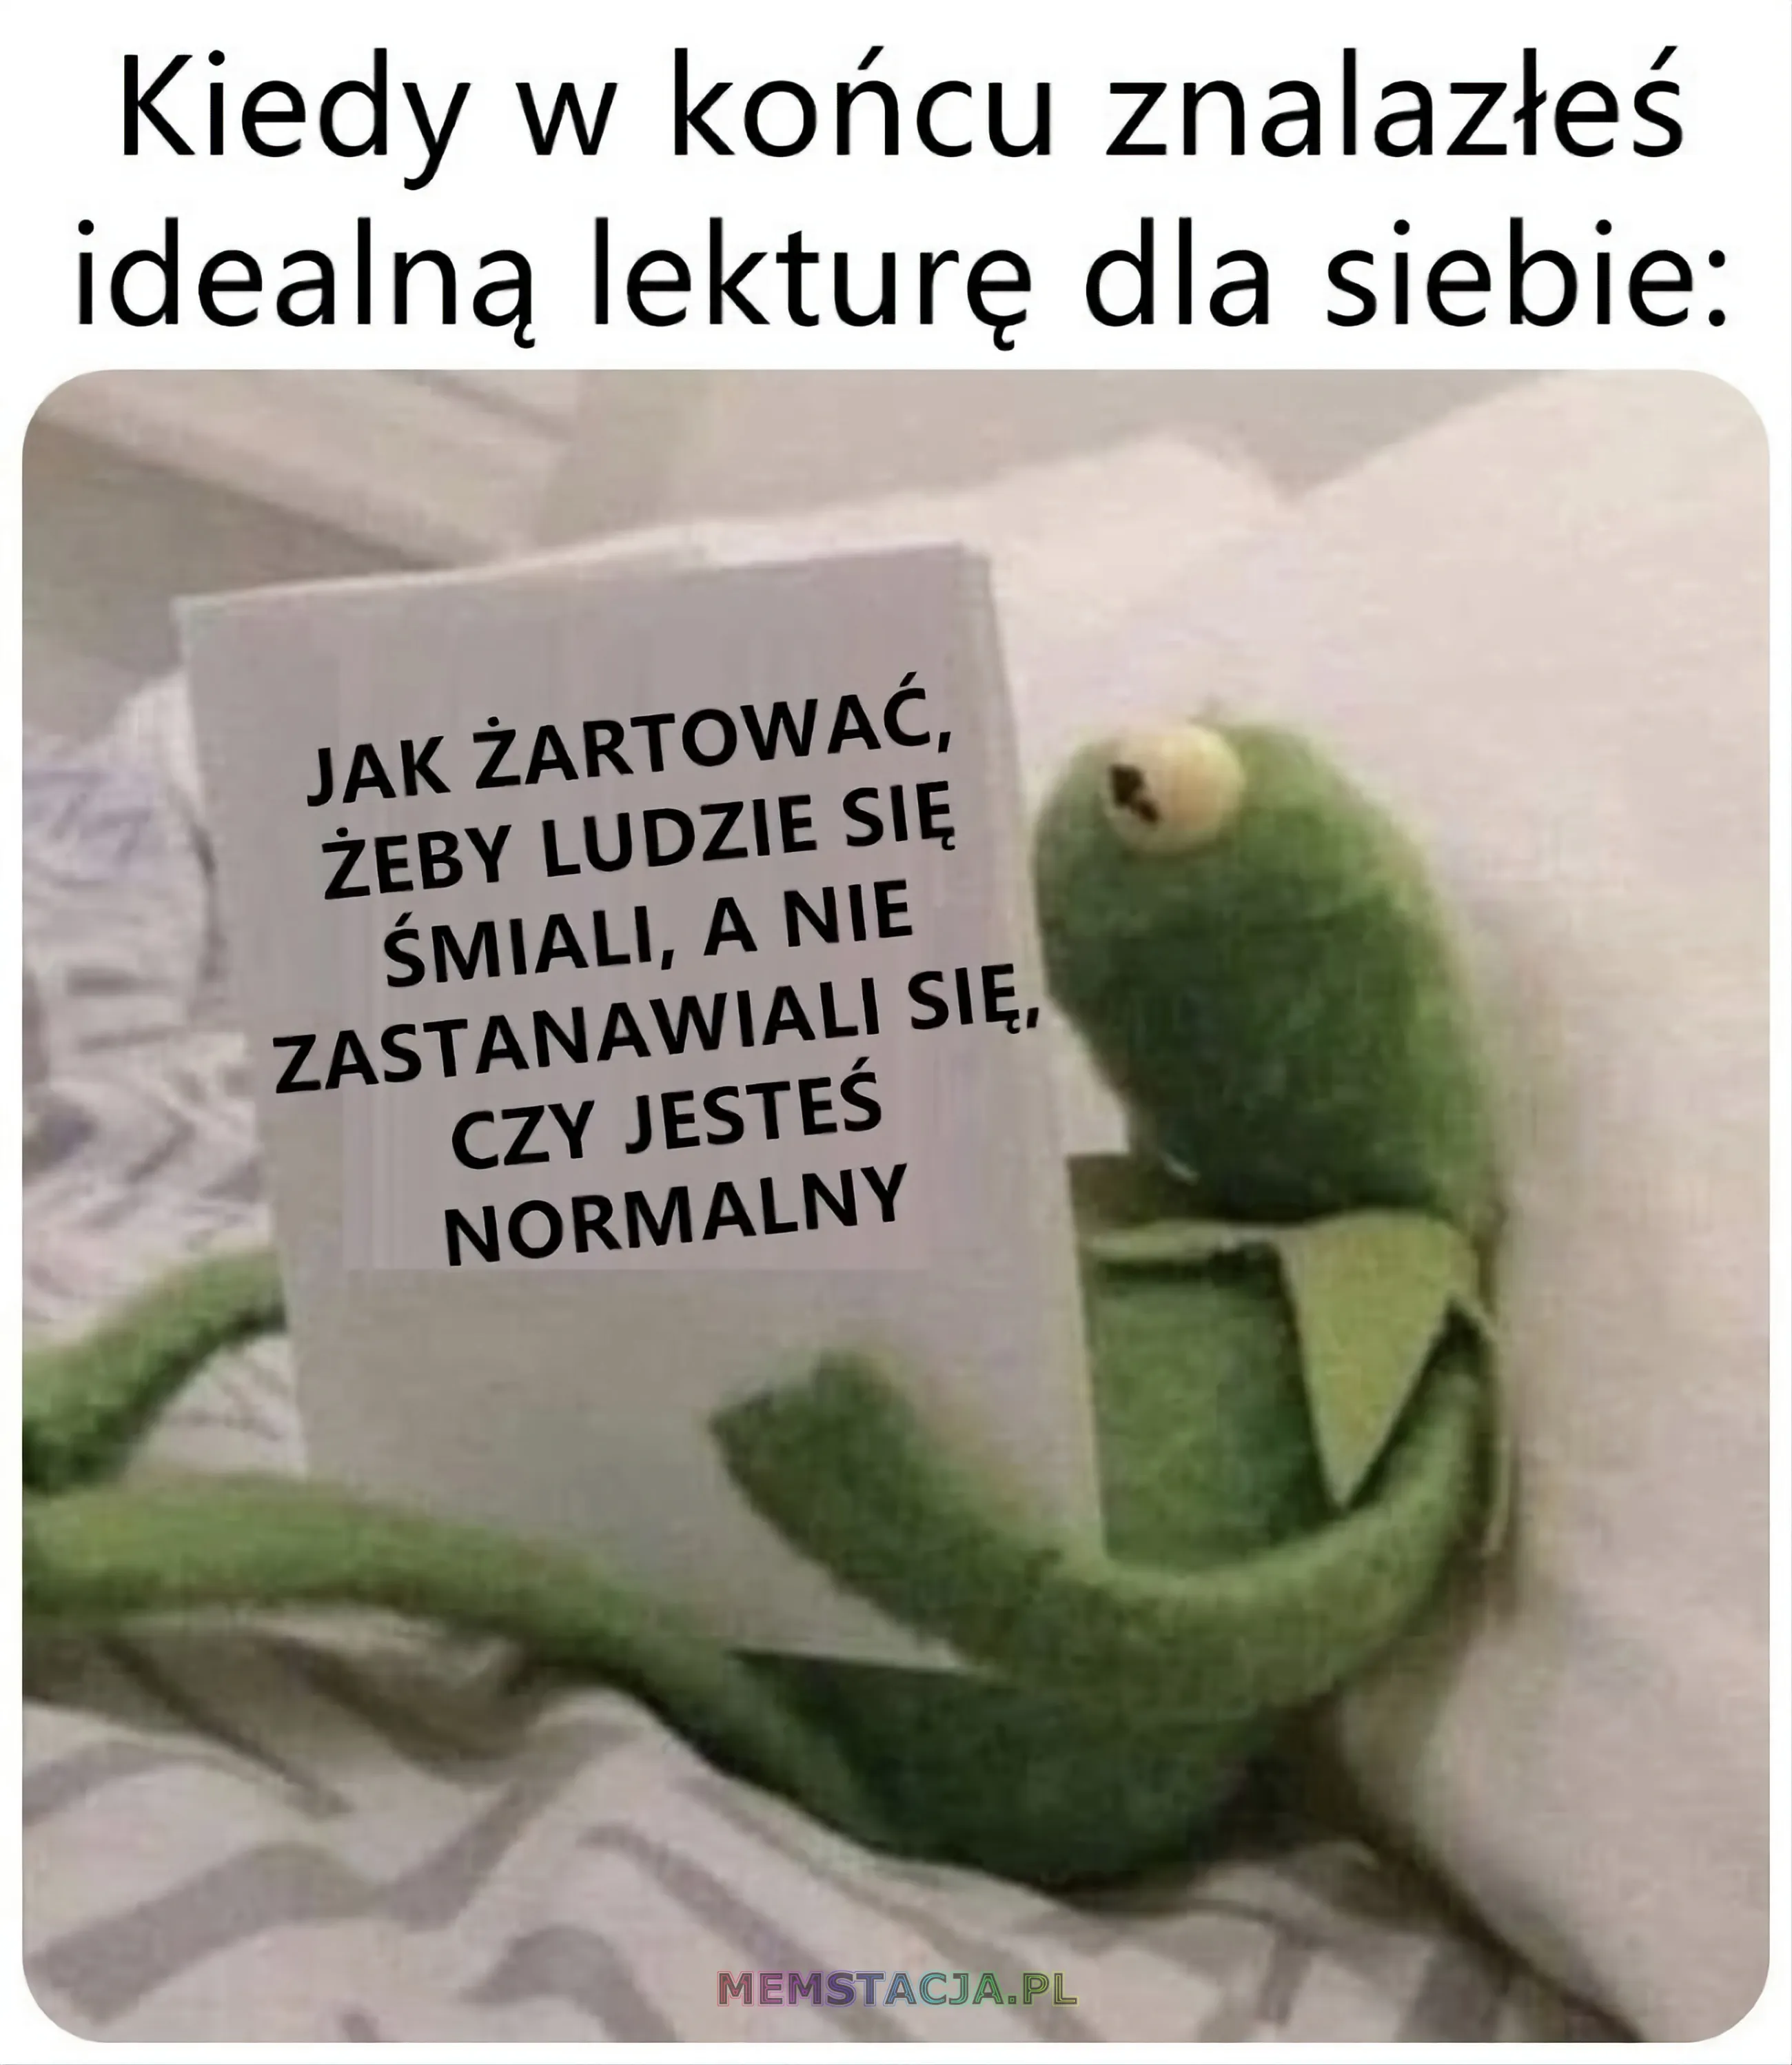 Mem przedstawiający postać siedząca na łóżku i czytająca książkę: 'Kiedy w końcu znalazłeś idealną lekturę dla siebie: Jak żartować, żeby ludzie się śmiali, a nie zastanawiali się, czy jesteś normalny'